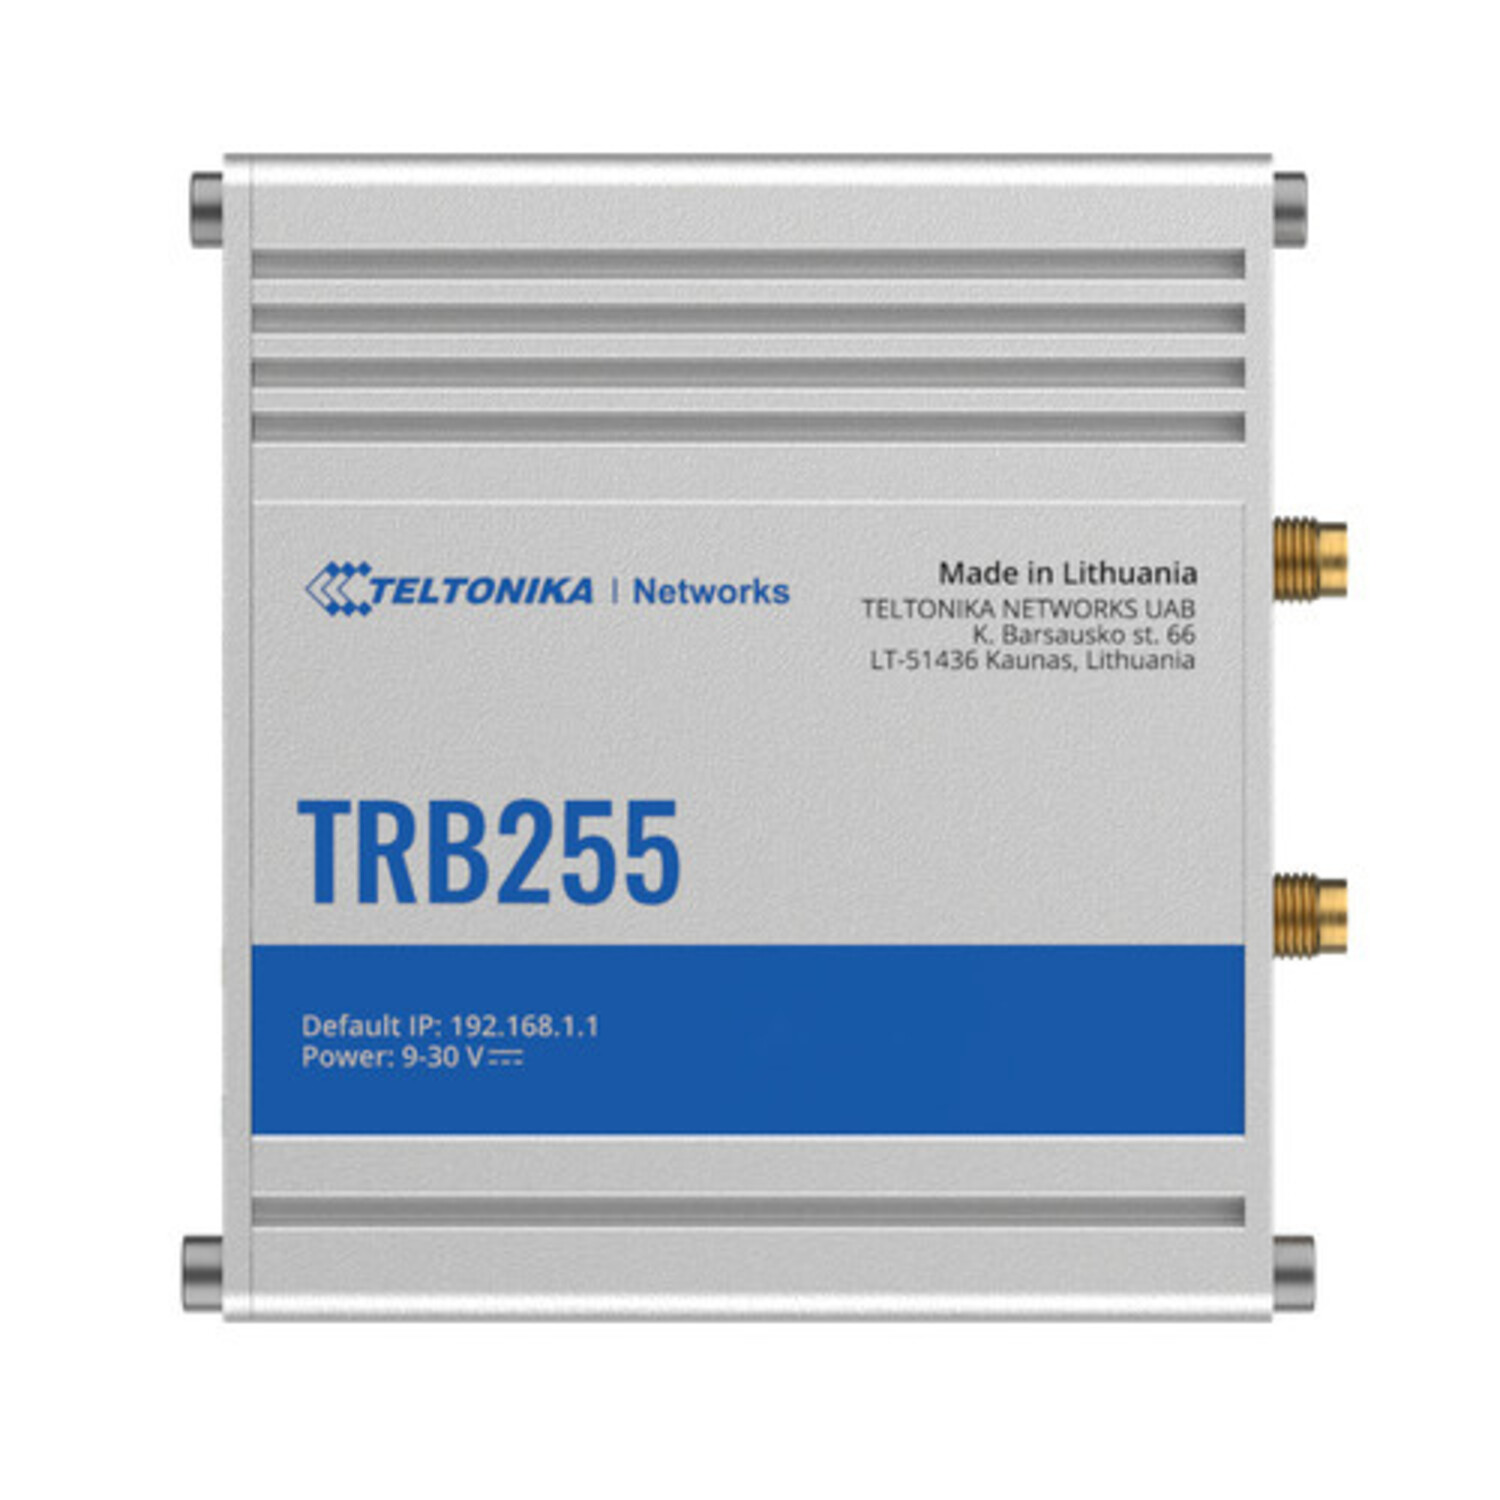 Teltonika TRB255 + Housing, IoT Gateways